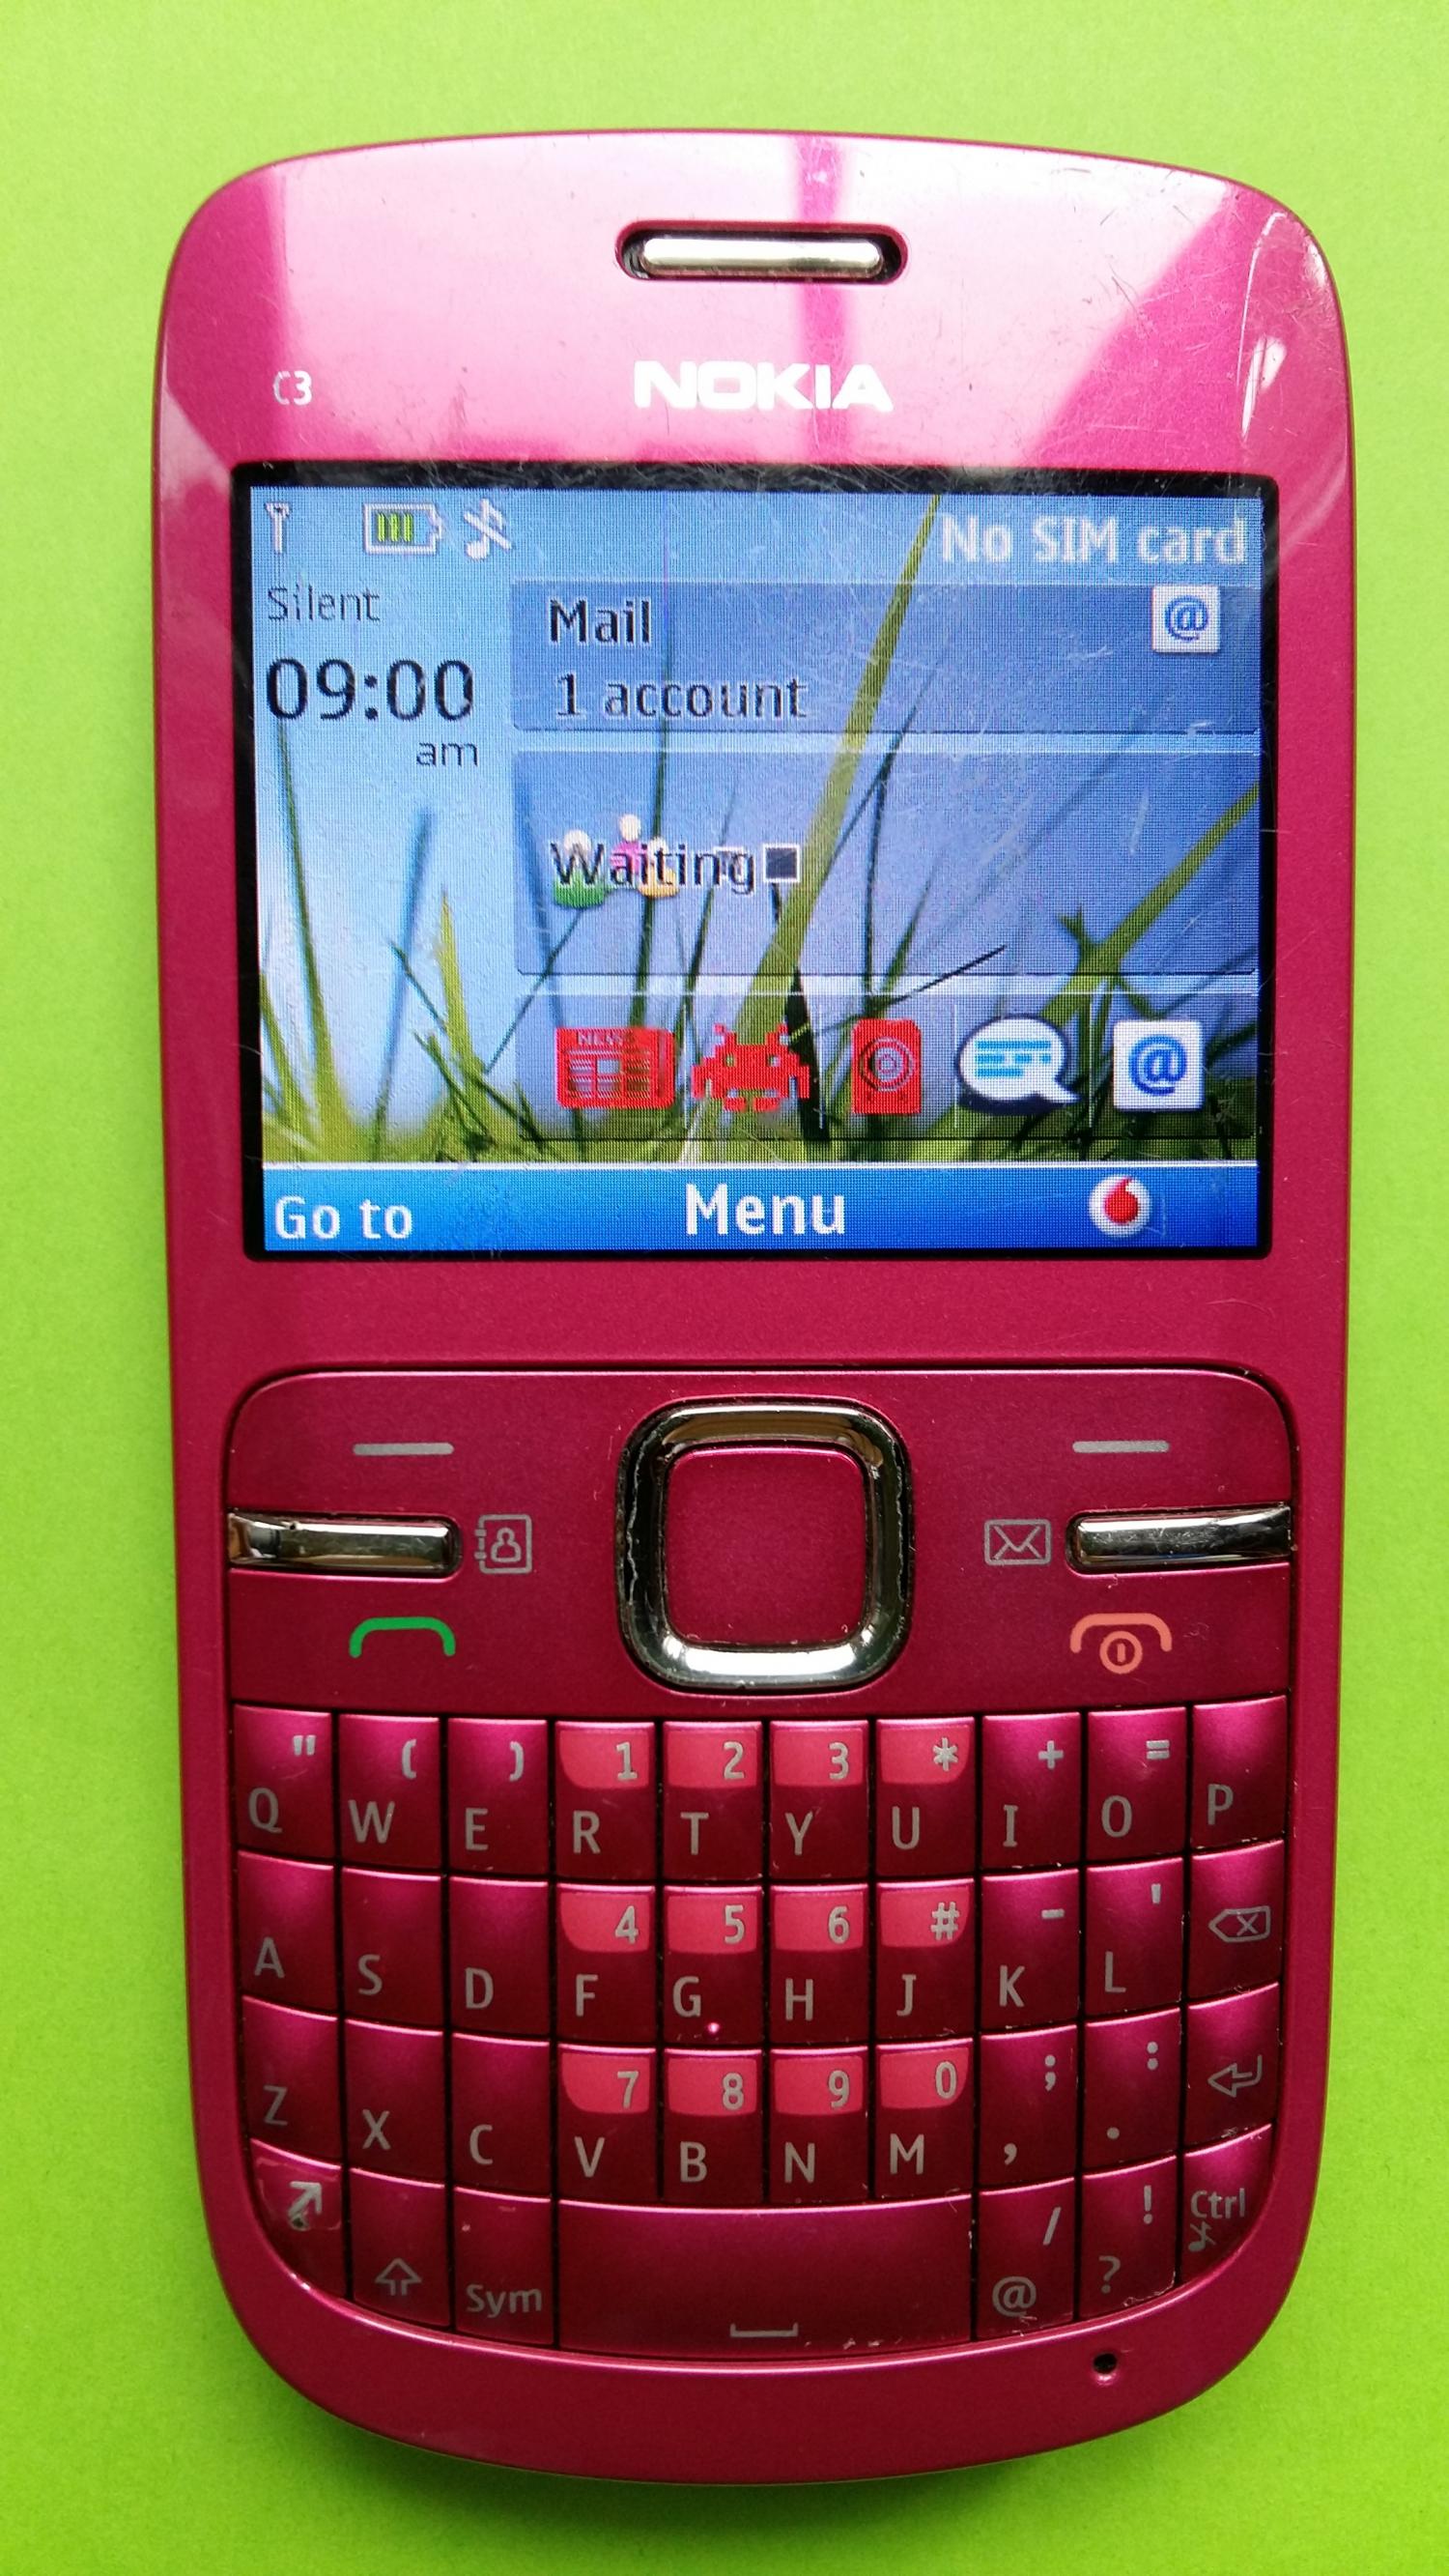 image-7313346-Nokia C3-00 (2)1.jpg